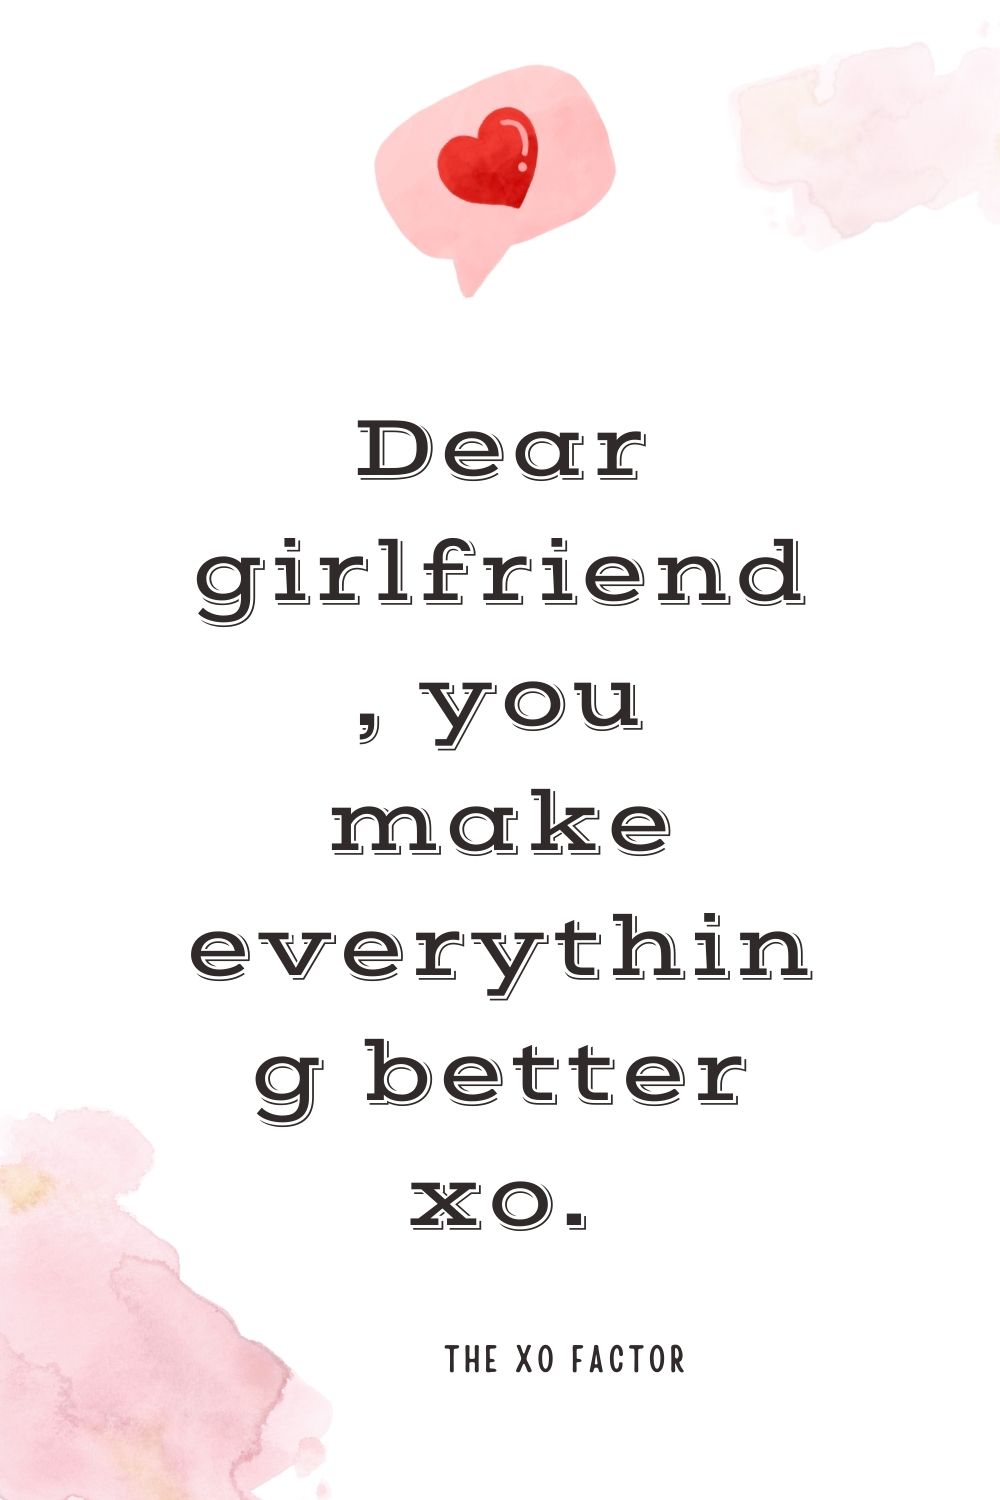 Dear girlfriend, you make everything better xo.